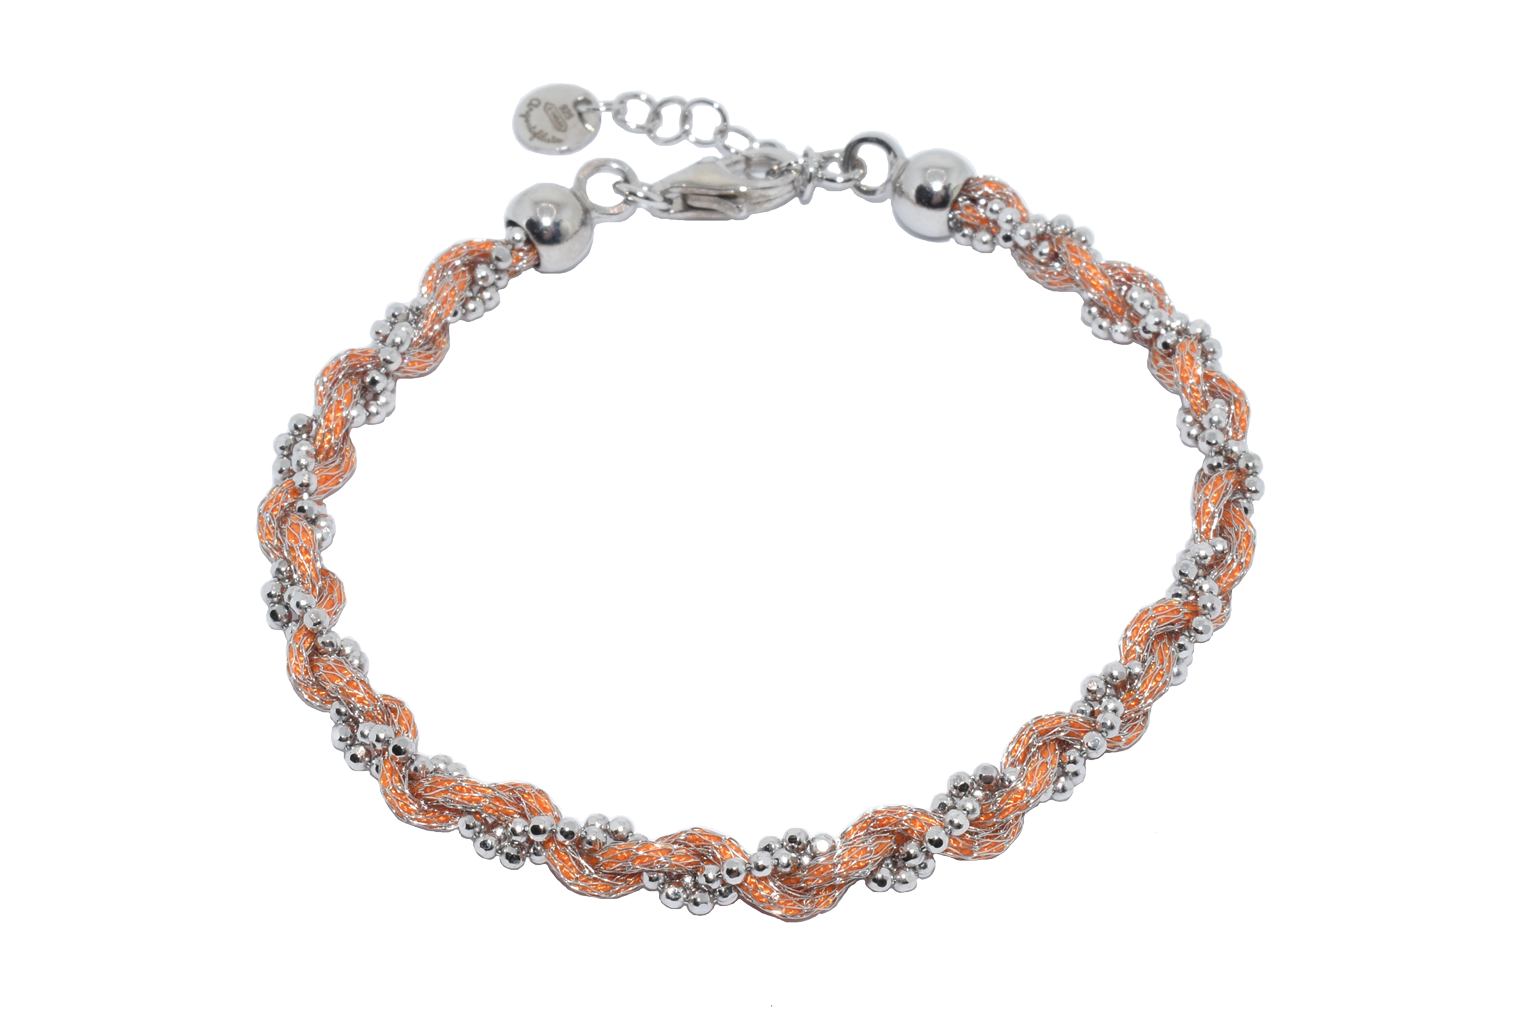 Bracciale-intrecciato-colorato-arancione-Argentofilato-in-argento-925